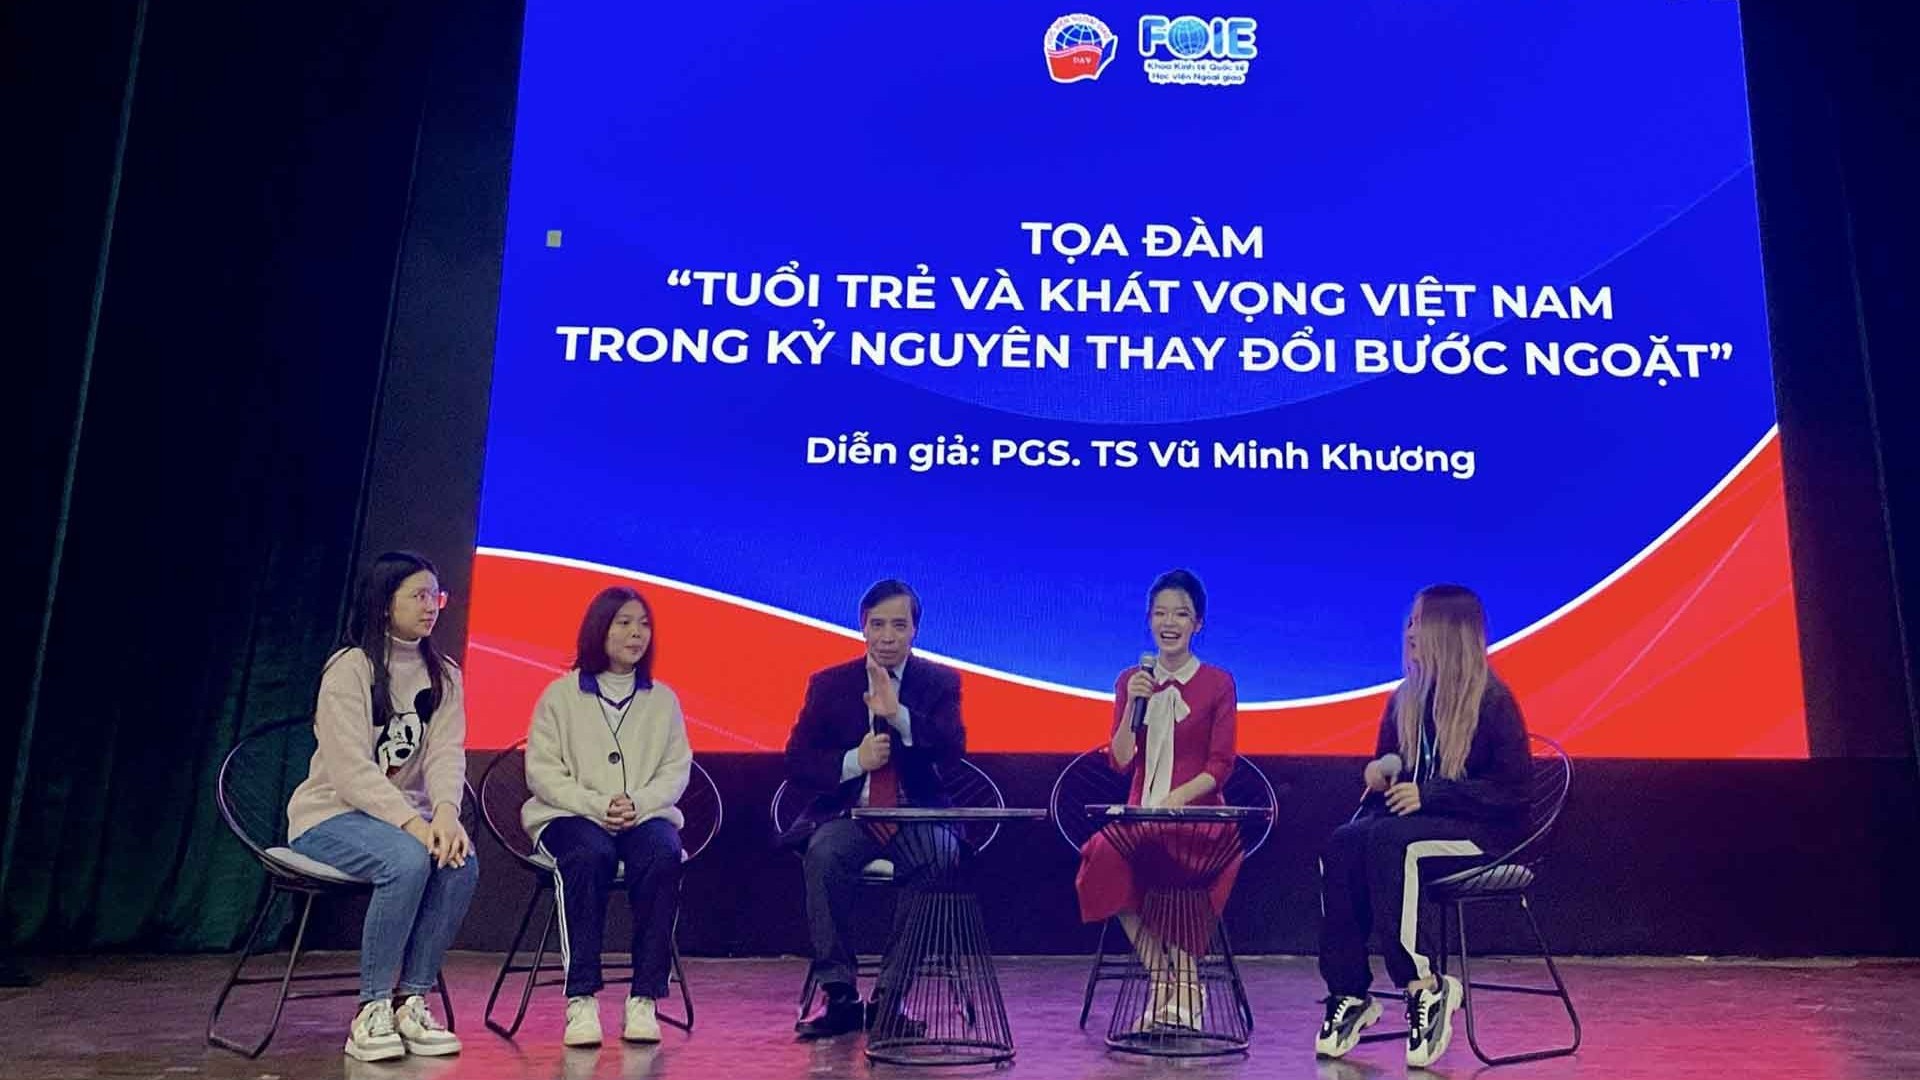 Tuổi trẻ và khát vọng Việt Nam trong kỷ nguyên thay đổi bước ngoặt